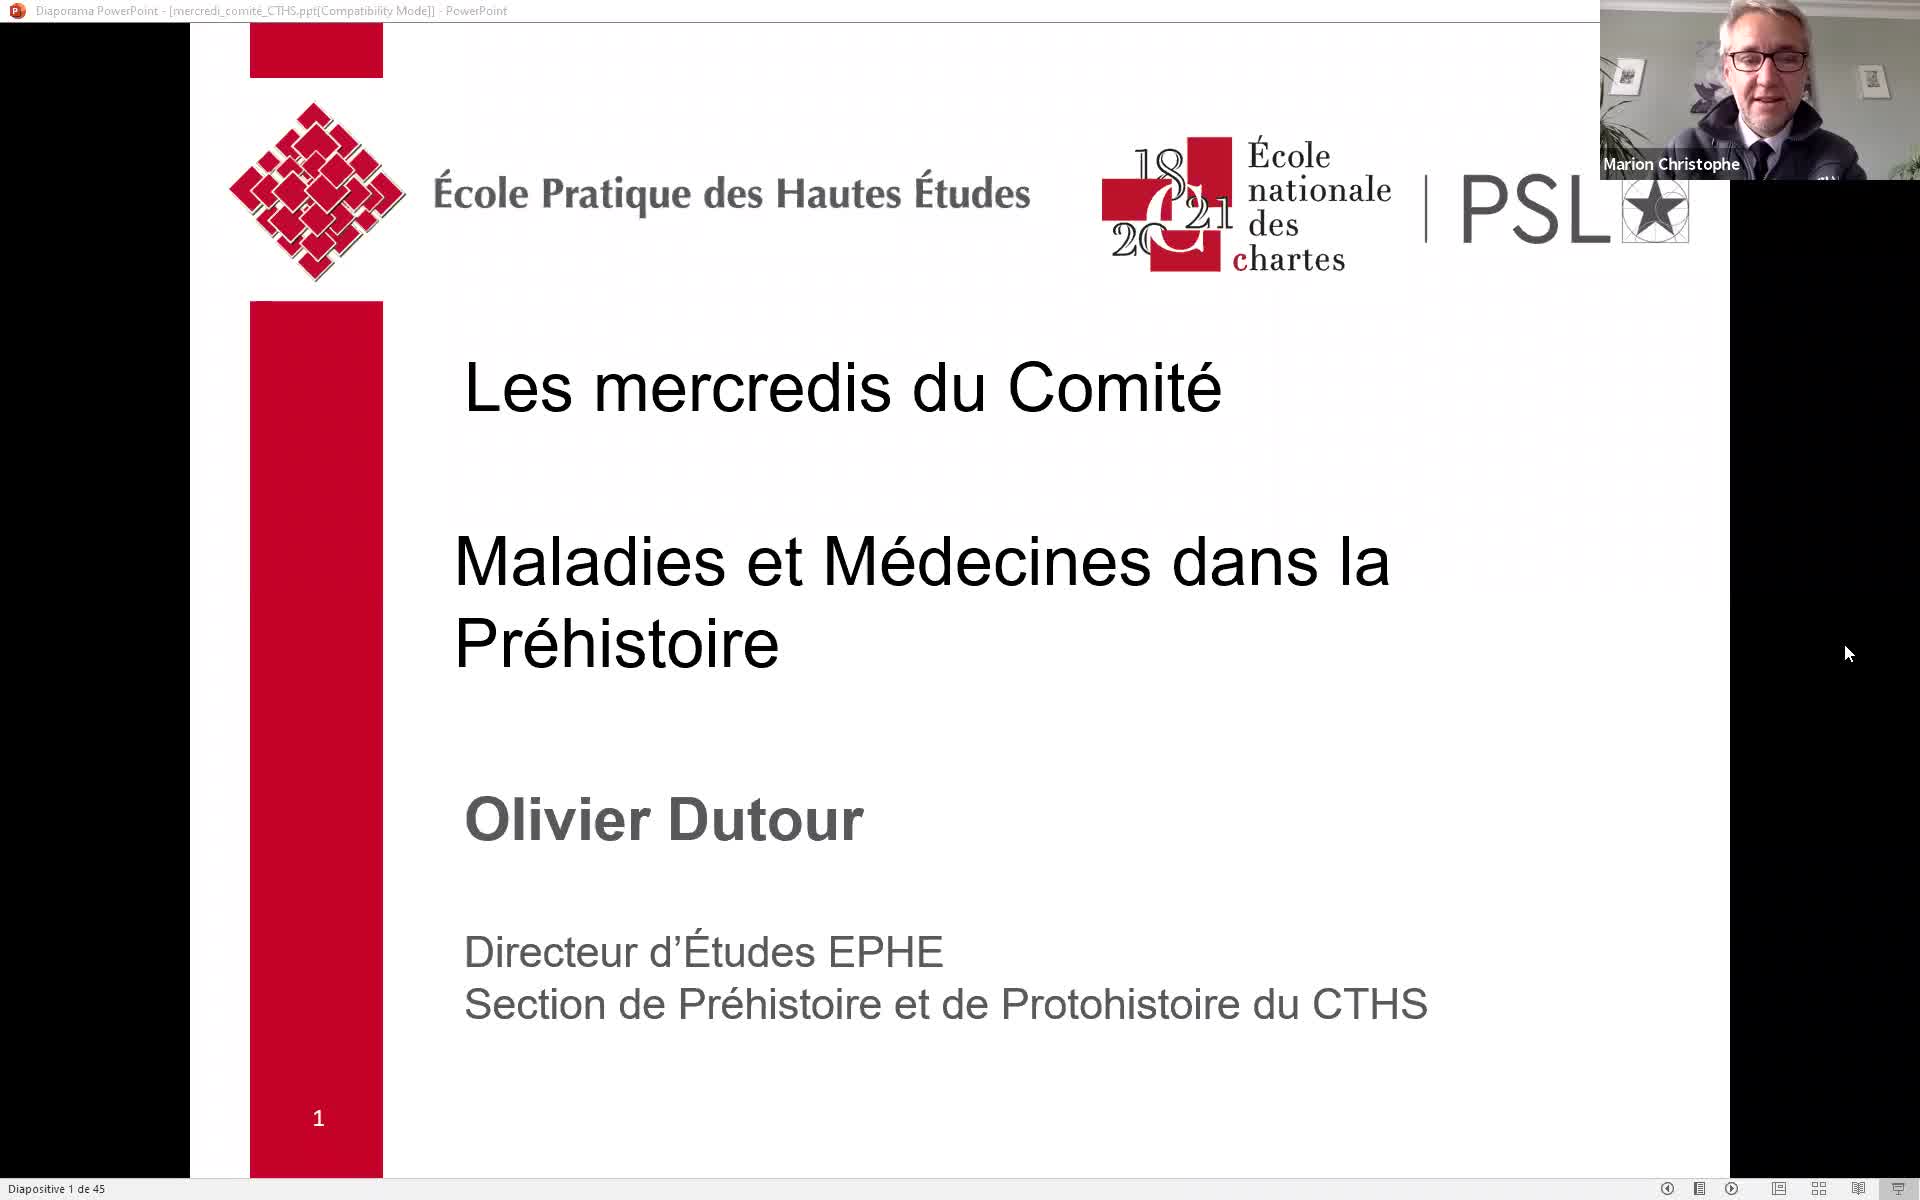 « Maladies et médecines dans la Préhistoire » Olivier DUTOUR